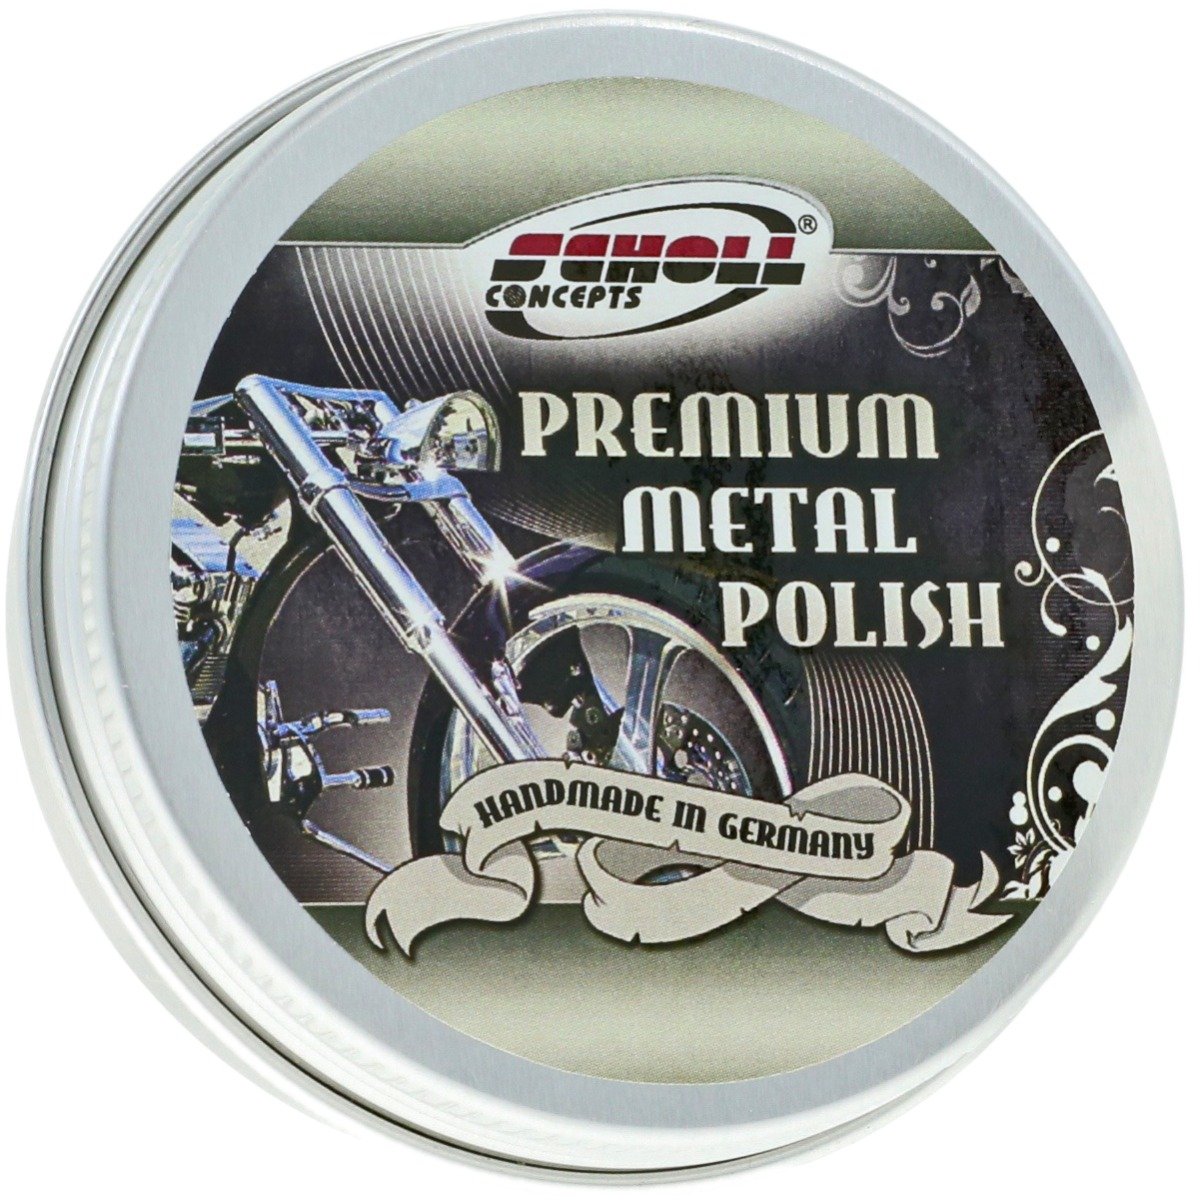 Premium Metal Polish - 100 gram